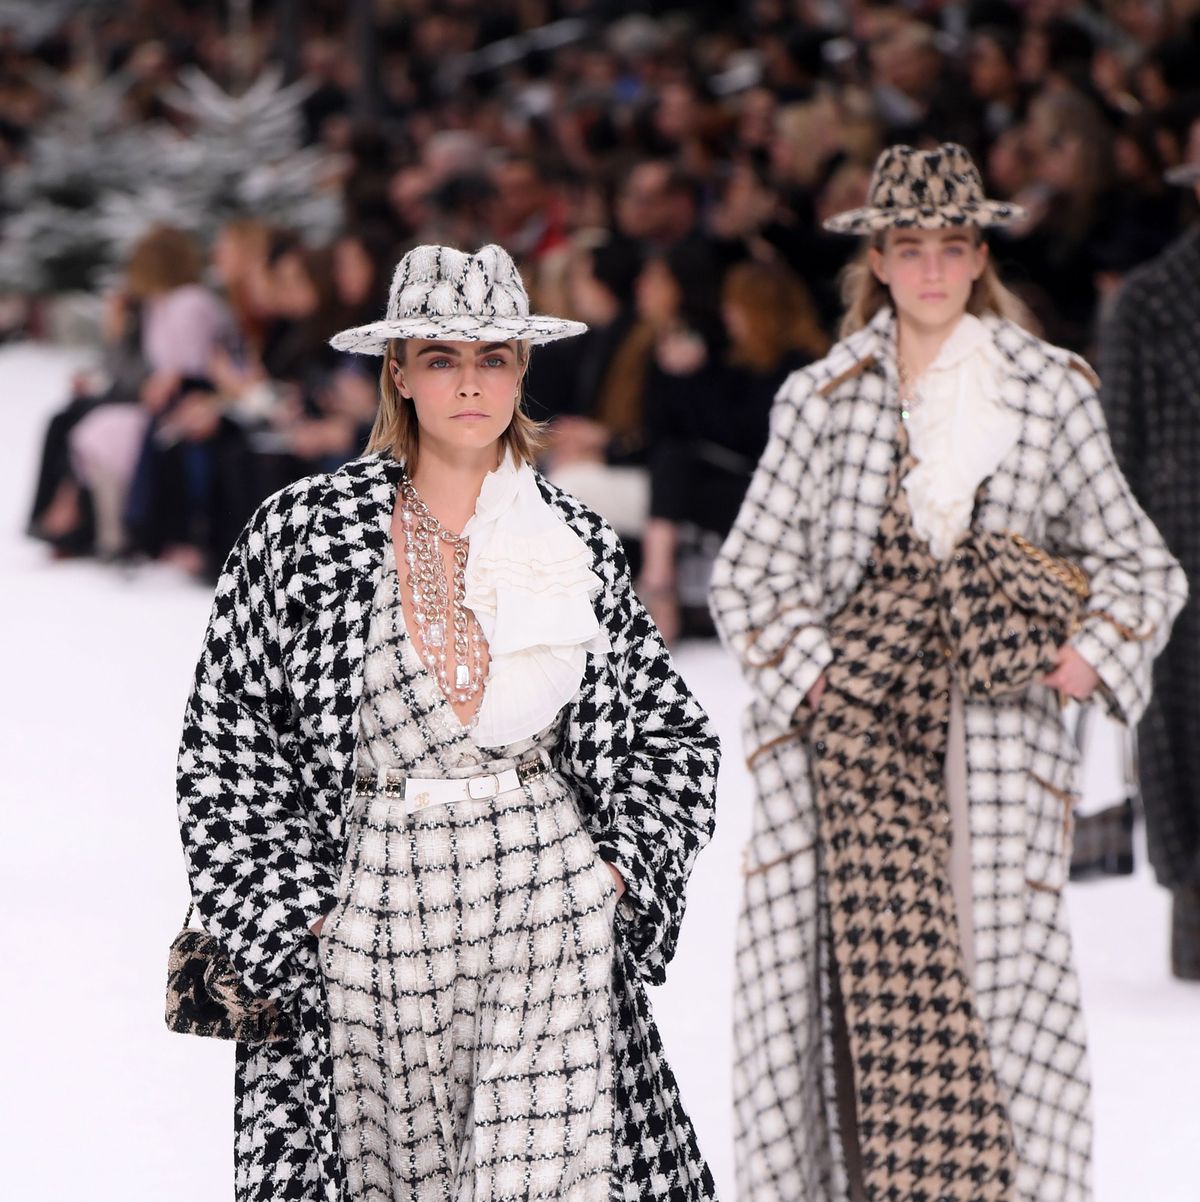 Chanel Show at Paris Fashion Week - Mirror Online